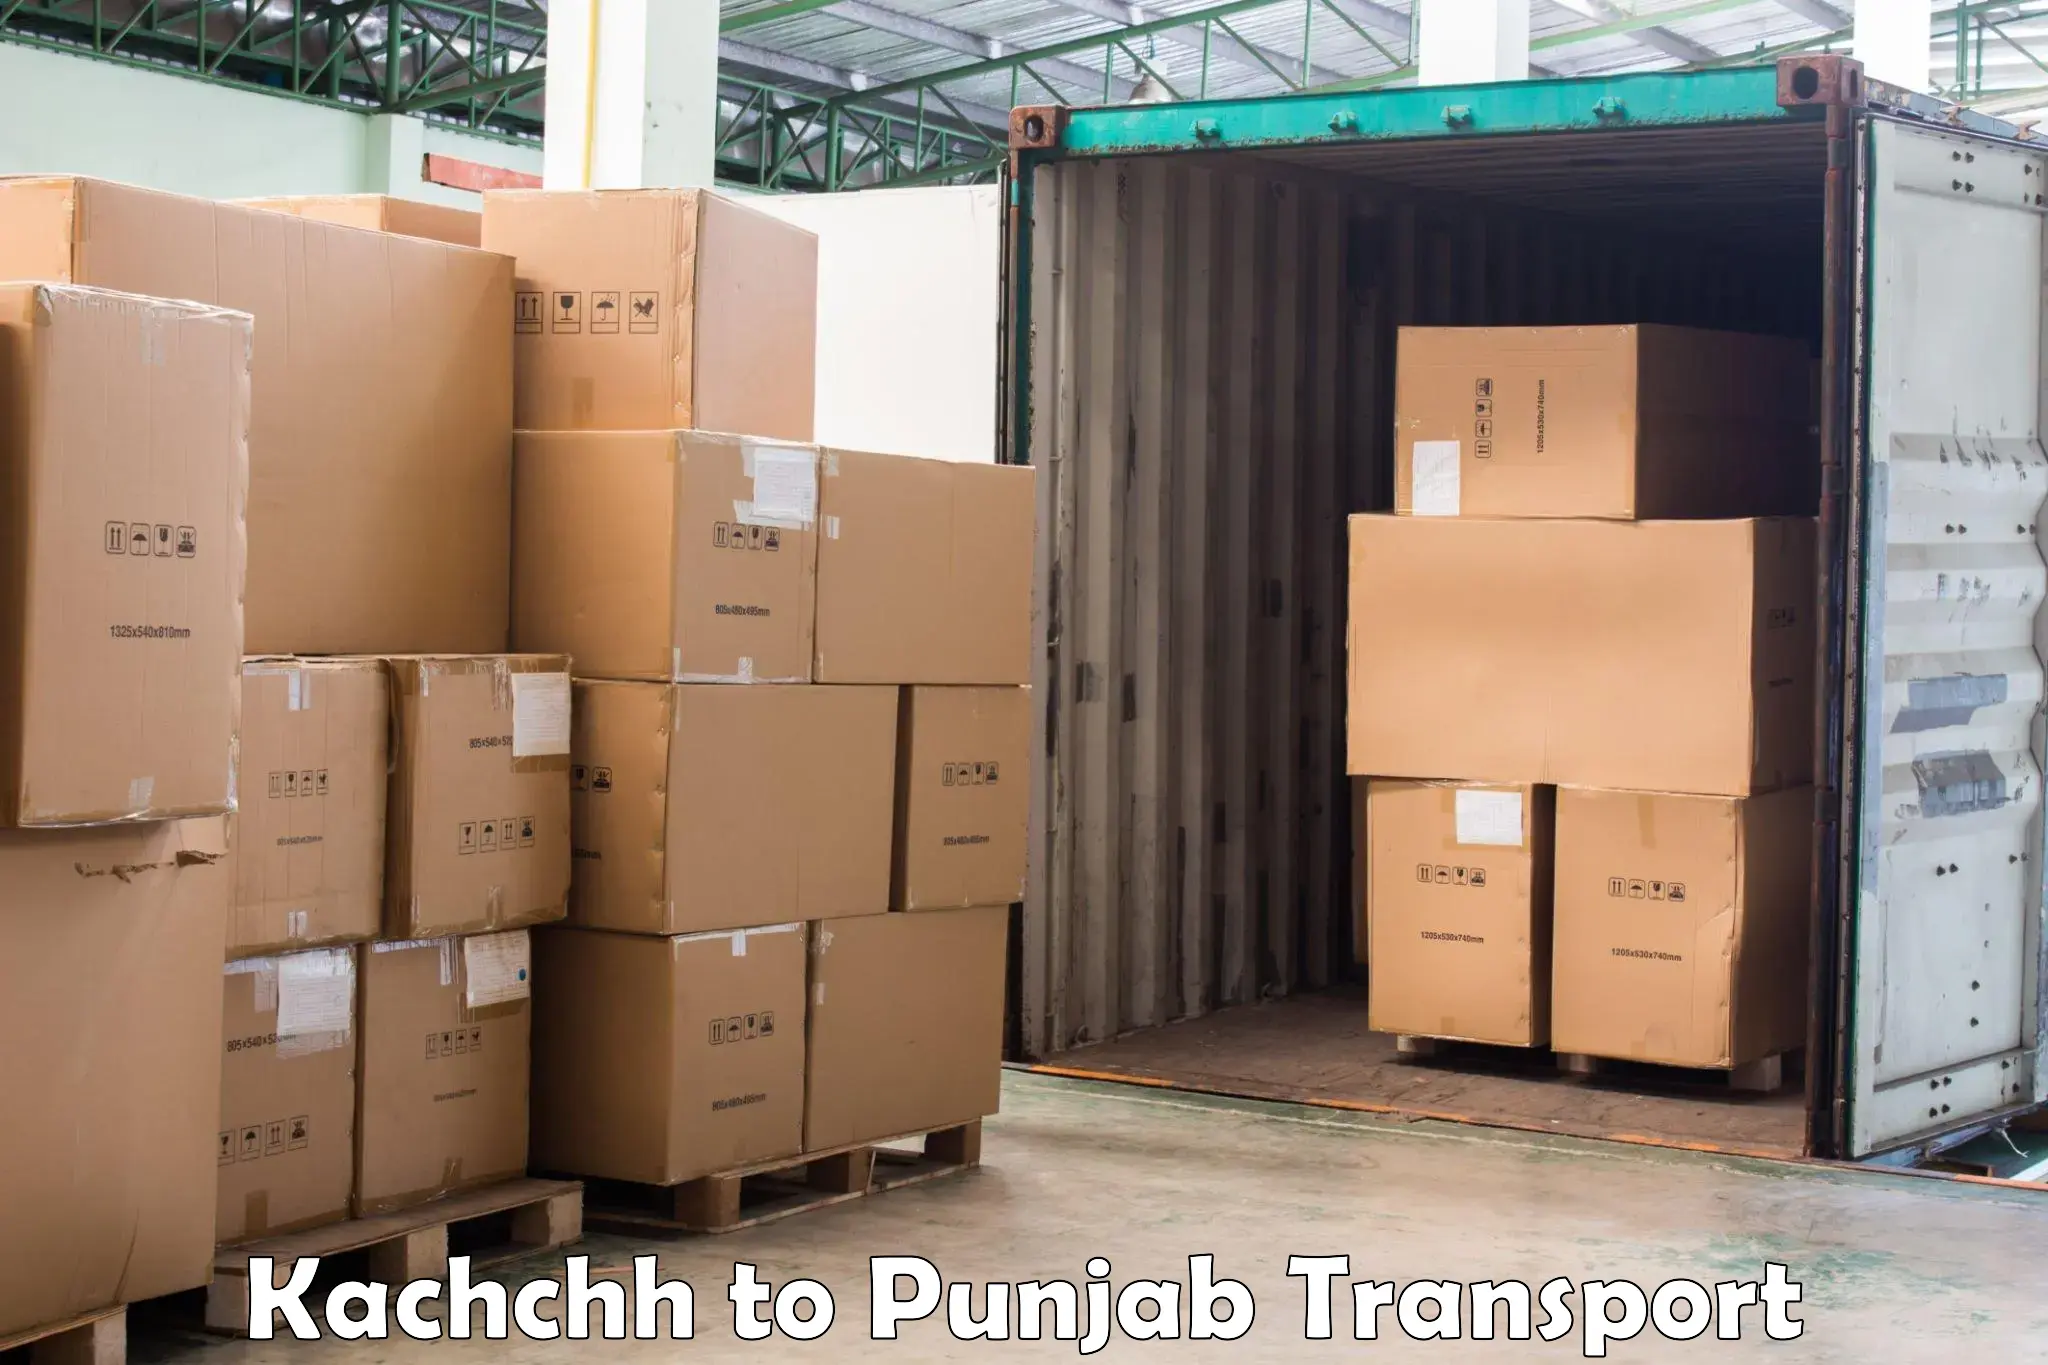 Nearest transport service Kachchh to Amritsar